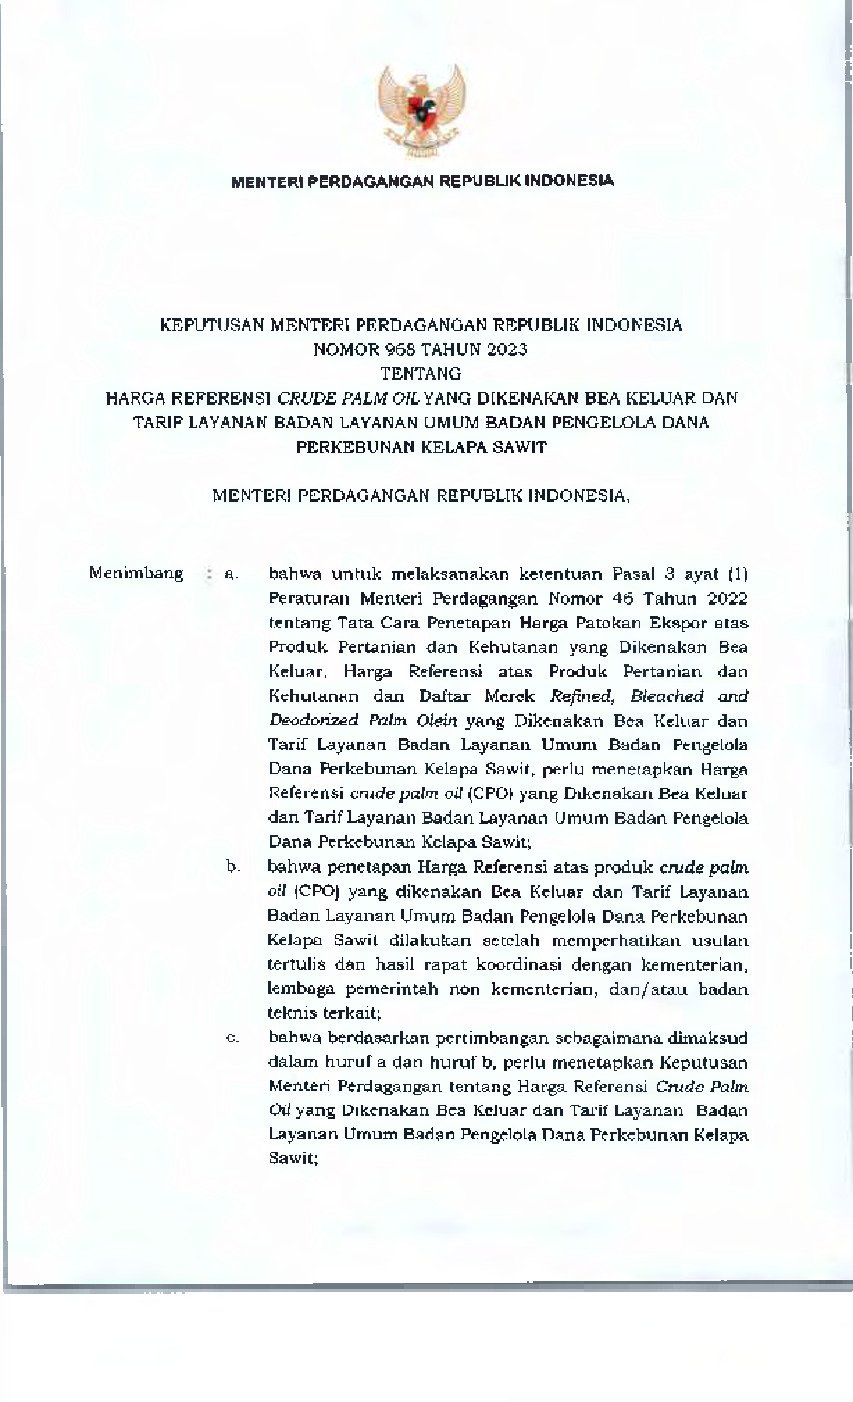 Keputusan Menteri Perdagangan No 968 tahun 2023 tentang Harga Referensi Crude Palm Oil yang Dikenakan Bea Keluar dan Tarif Layanan Badan Layanan Umum Badan Pengelola Dana Perkebunan Kelapa Sawit